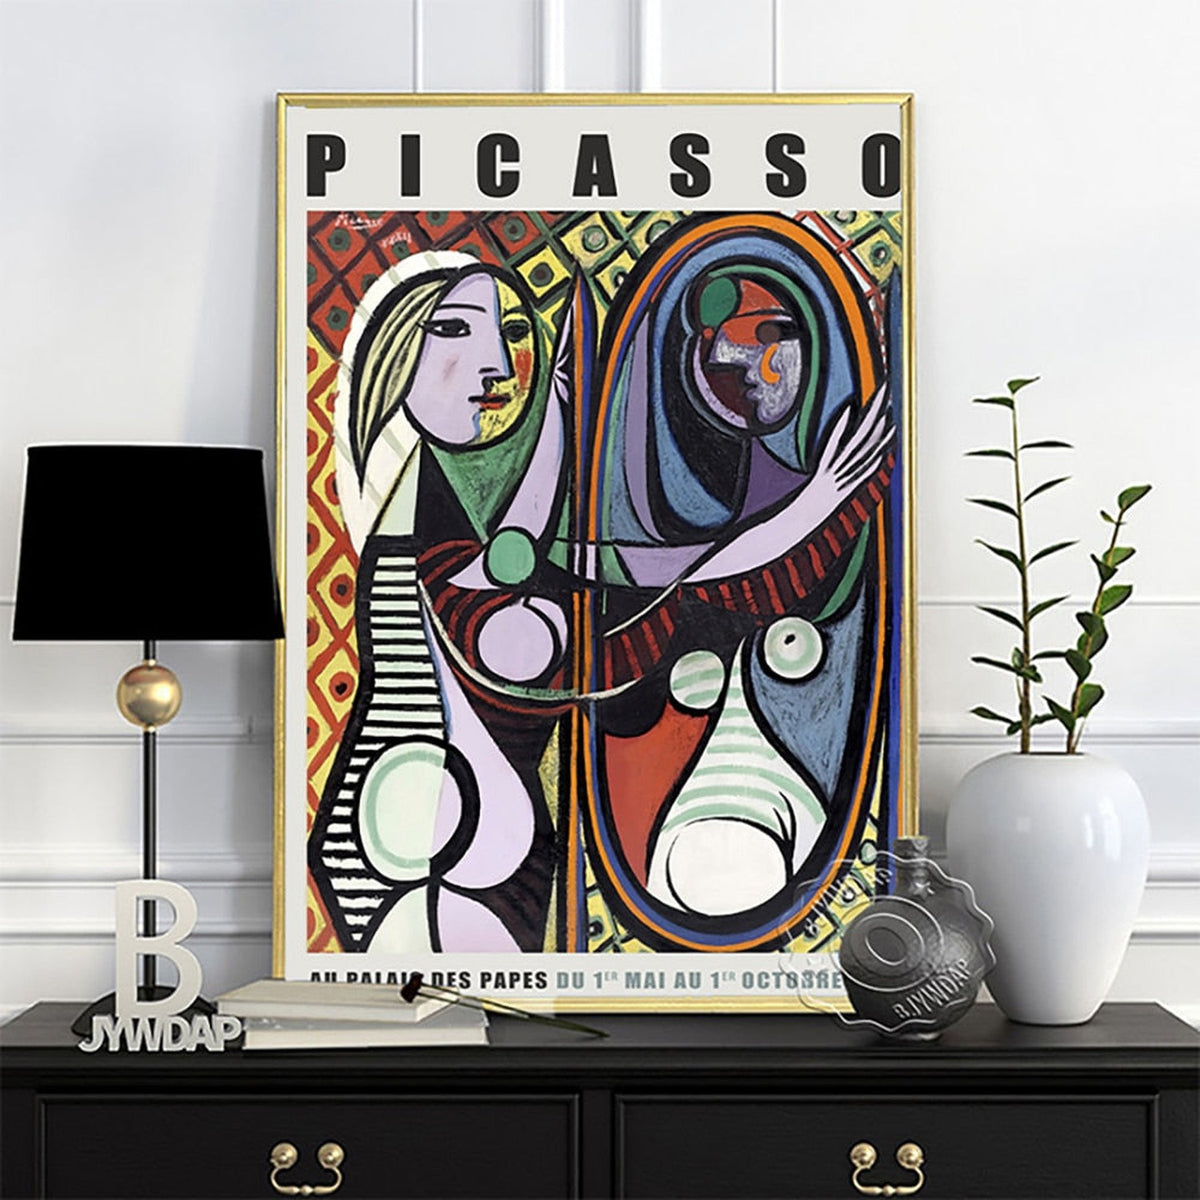 Originale Pablo Picasso-Ausstellungsplakate, Kunstwerke des ausgestellten Meisters